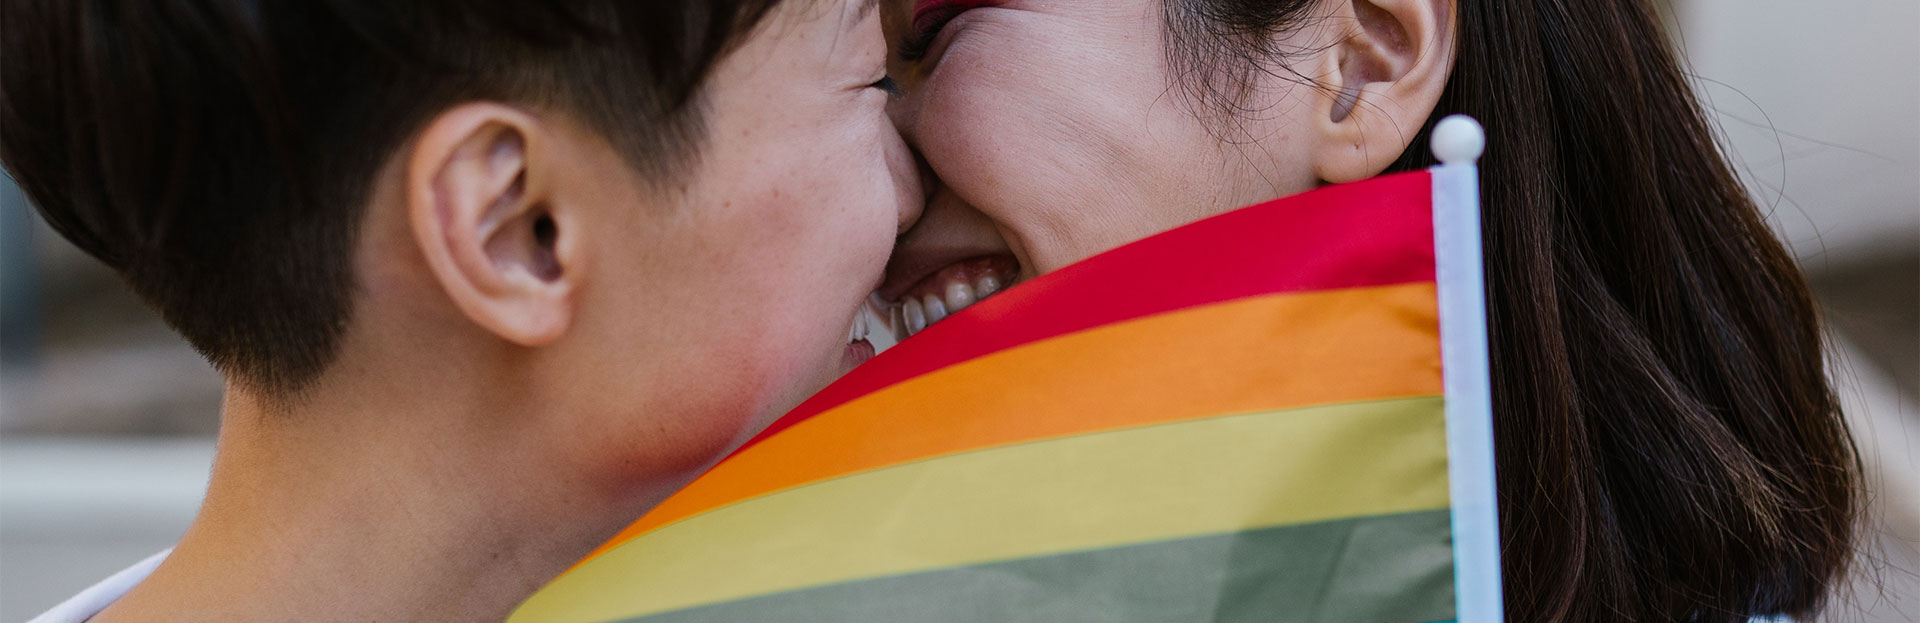 Día de la visibilidad lésbica: una fecha de lucha y celebración